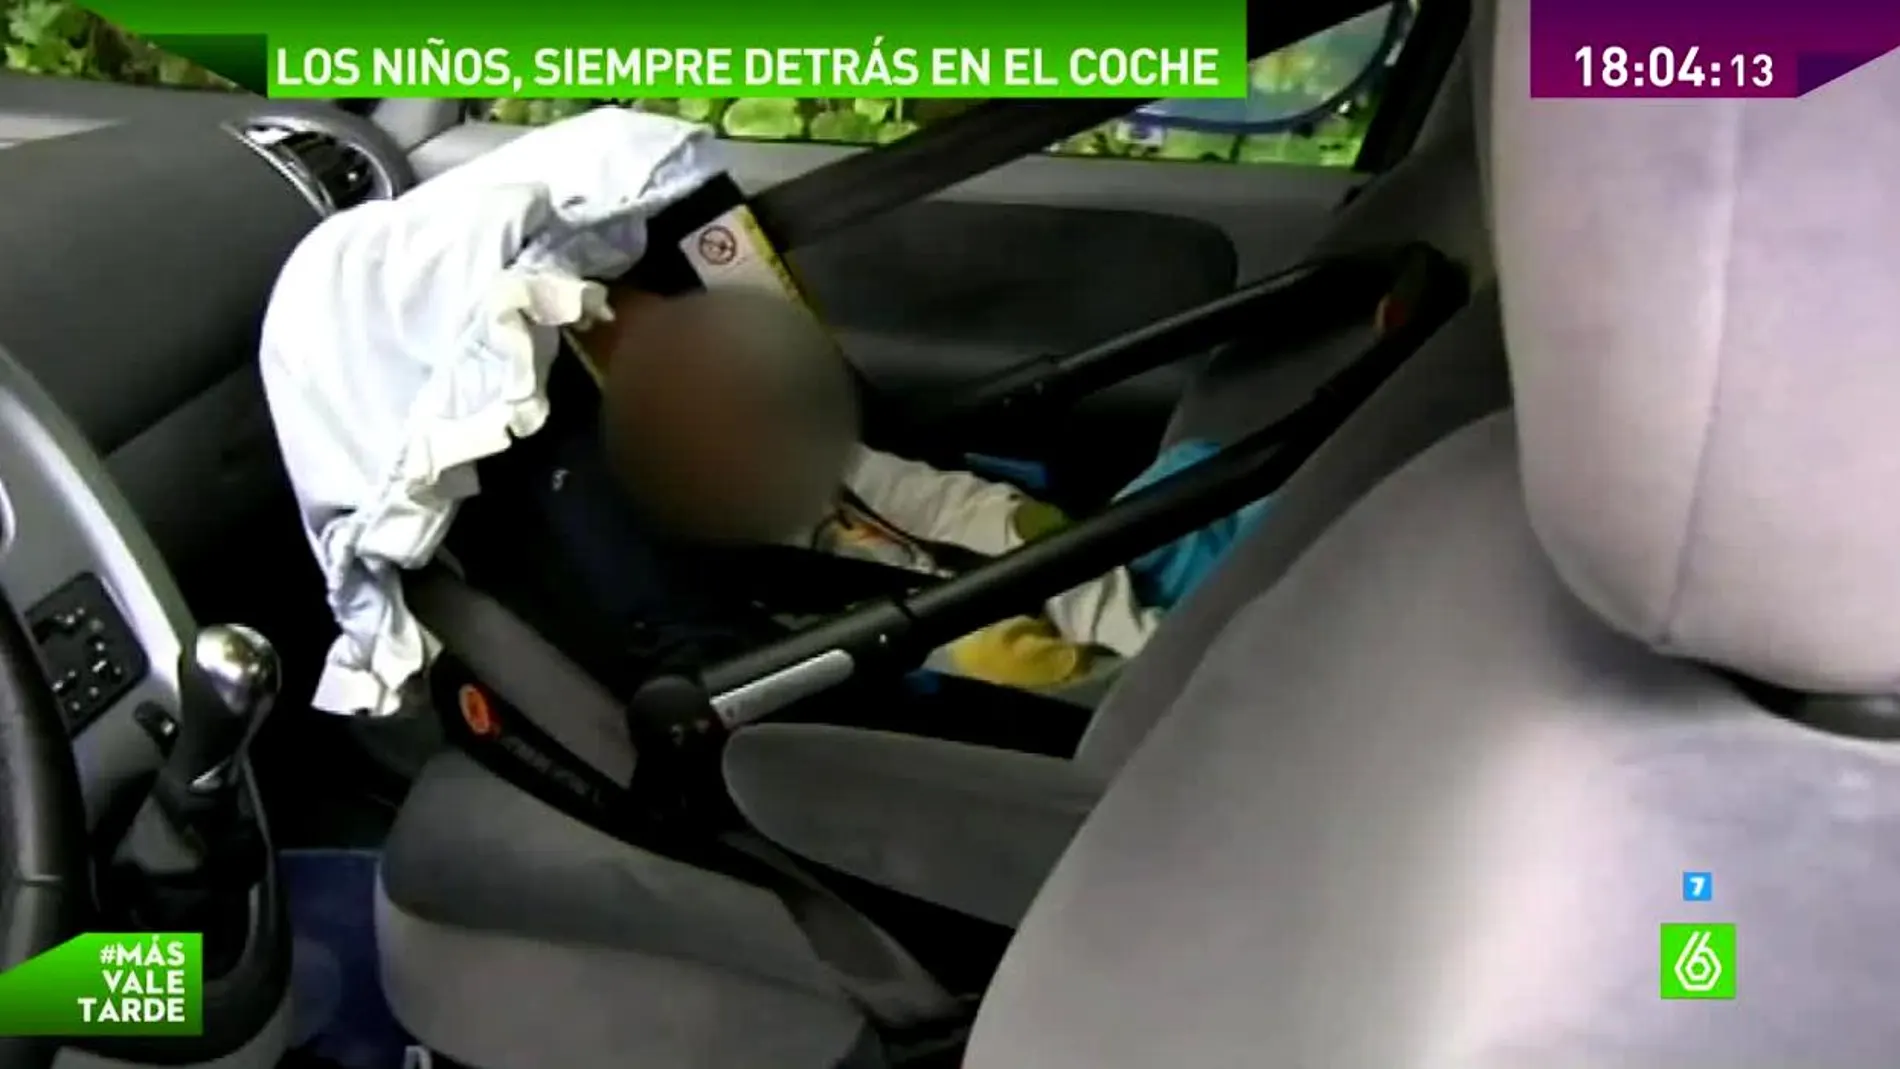 Desde el 1 de octubre se prohíbe el uso de sillas infantiles en el asiento delantero del coche